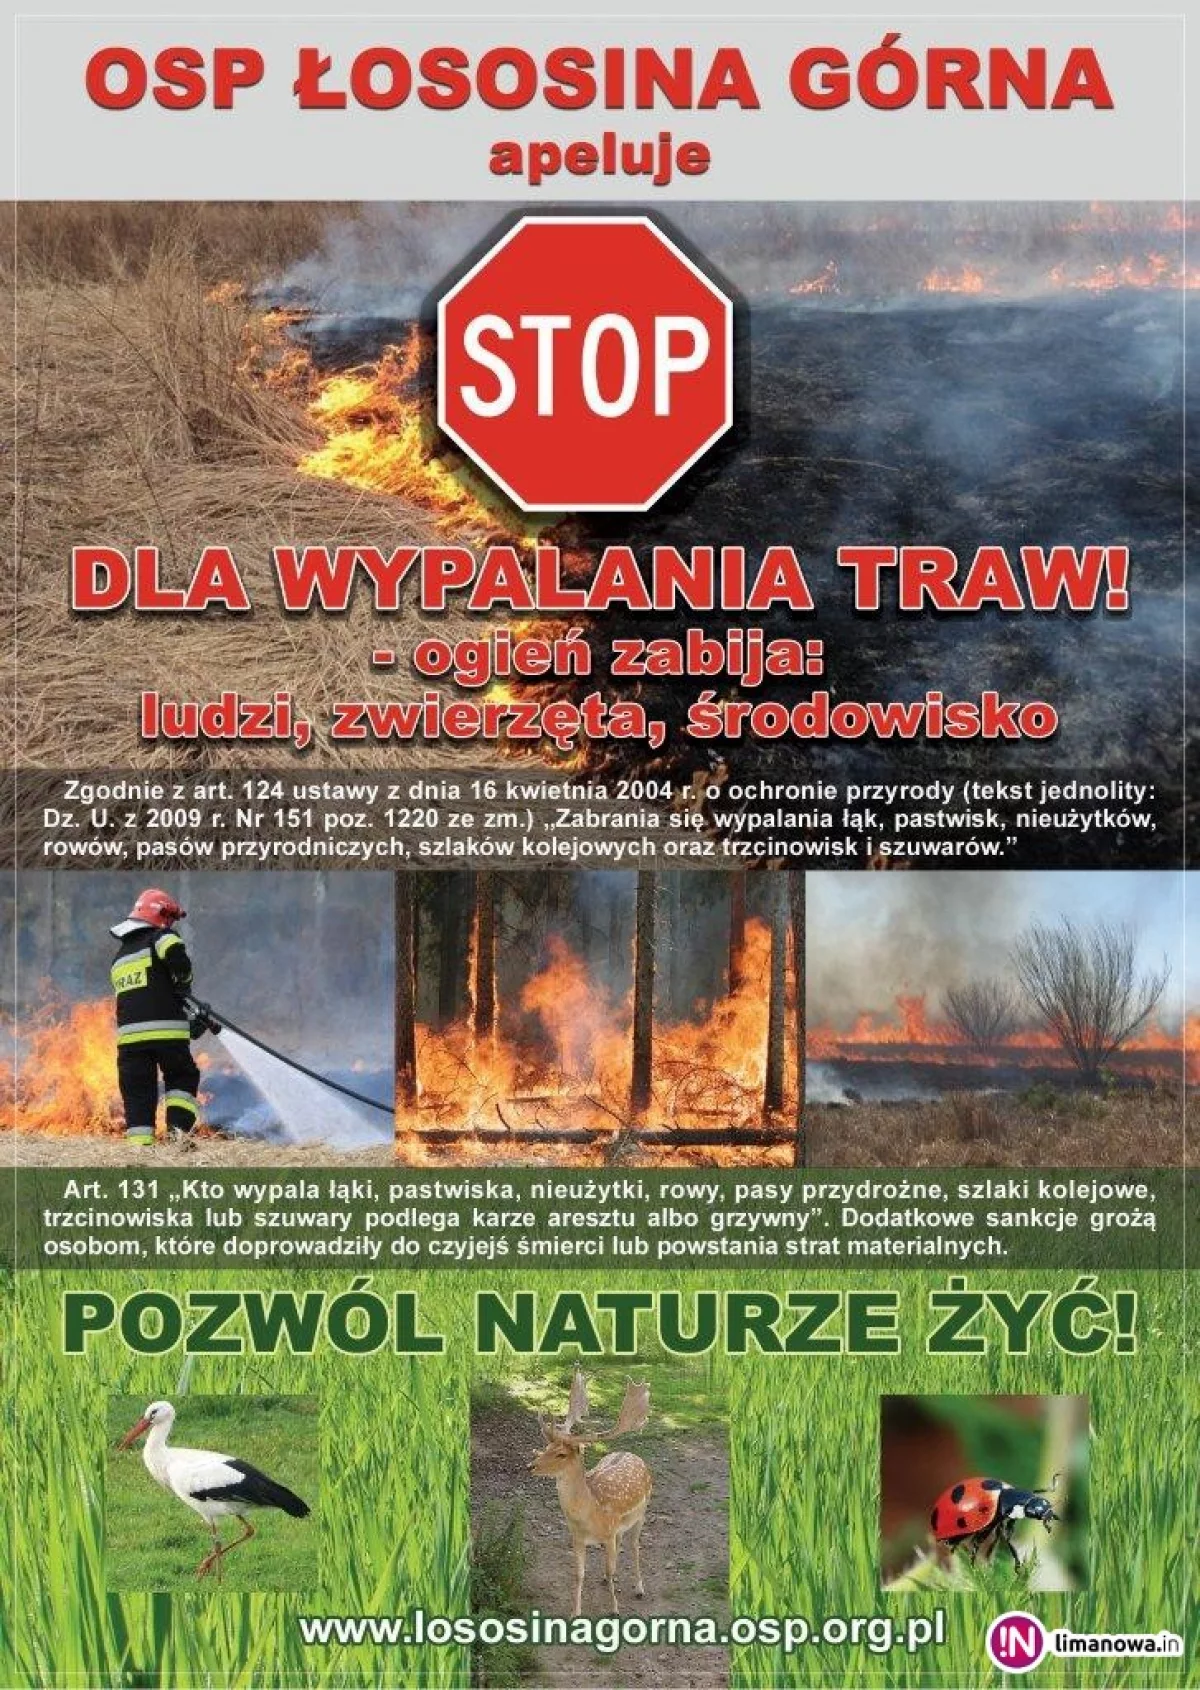 OSP Łososina Górna apeluje! Wypalanie traw jest niedozwolone i naprawdę niebezpieczne!